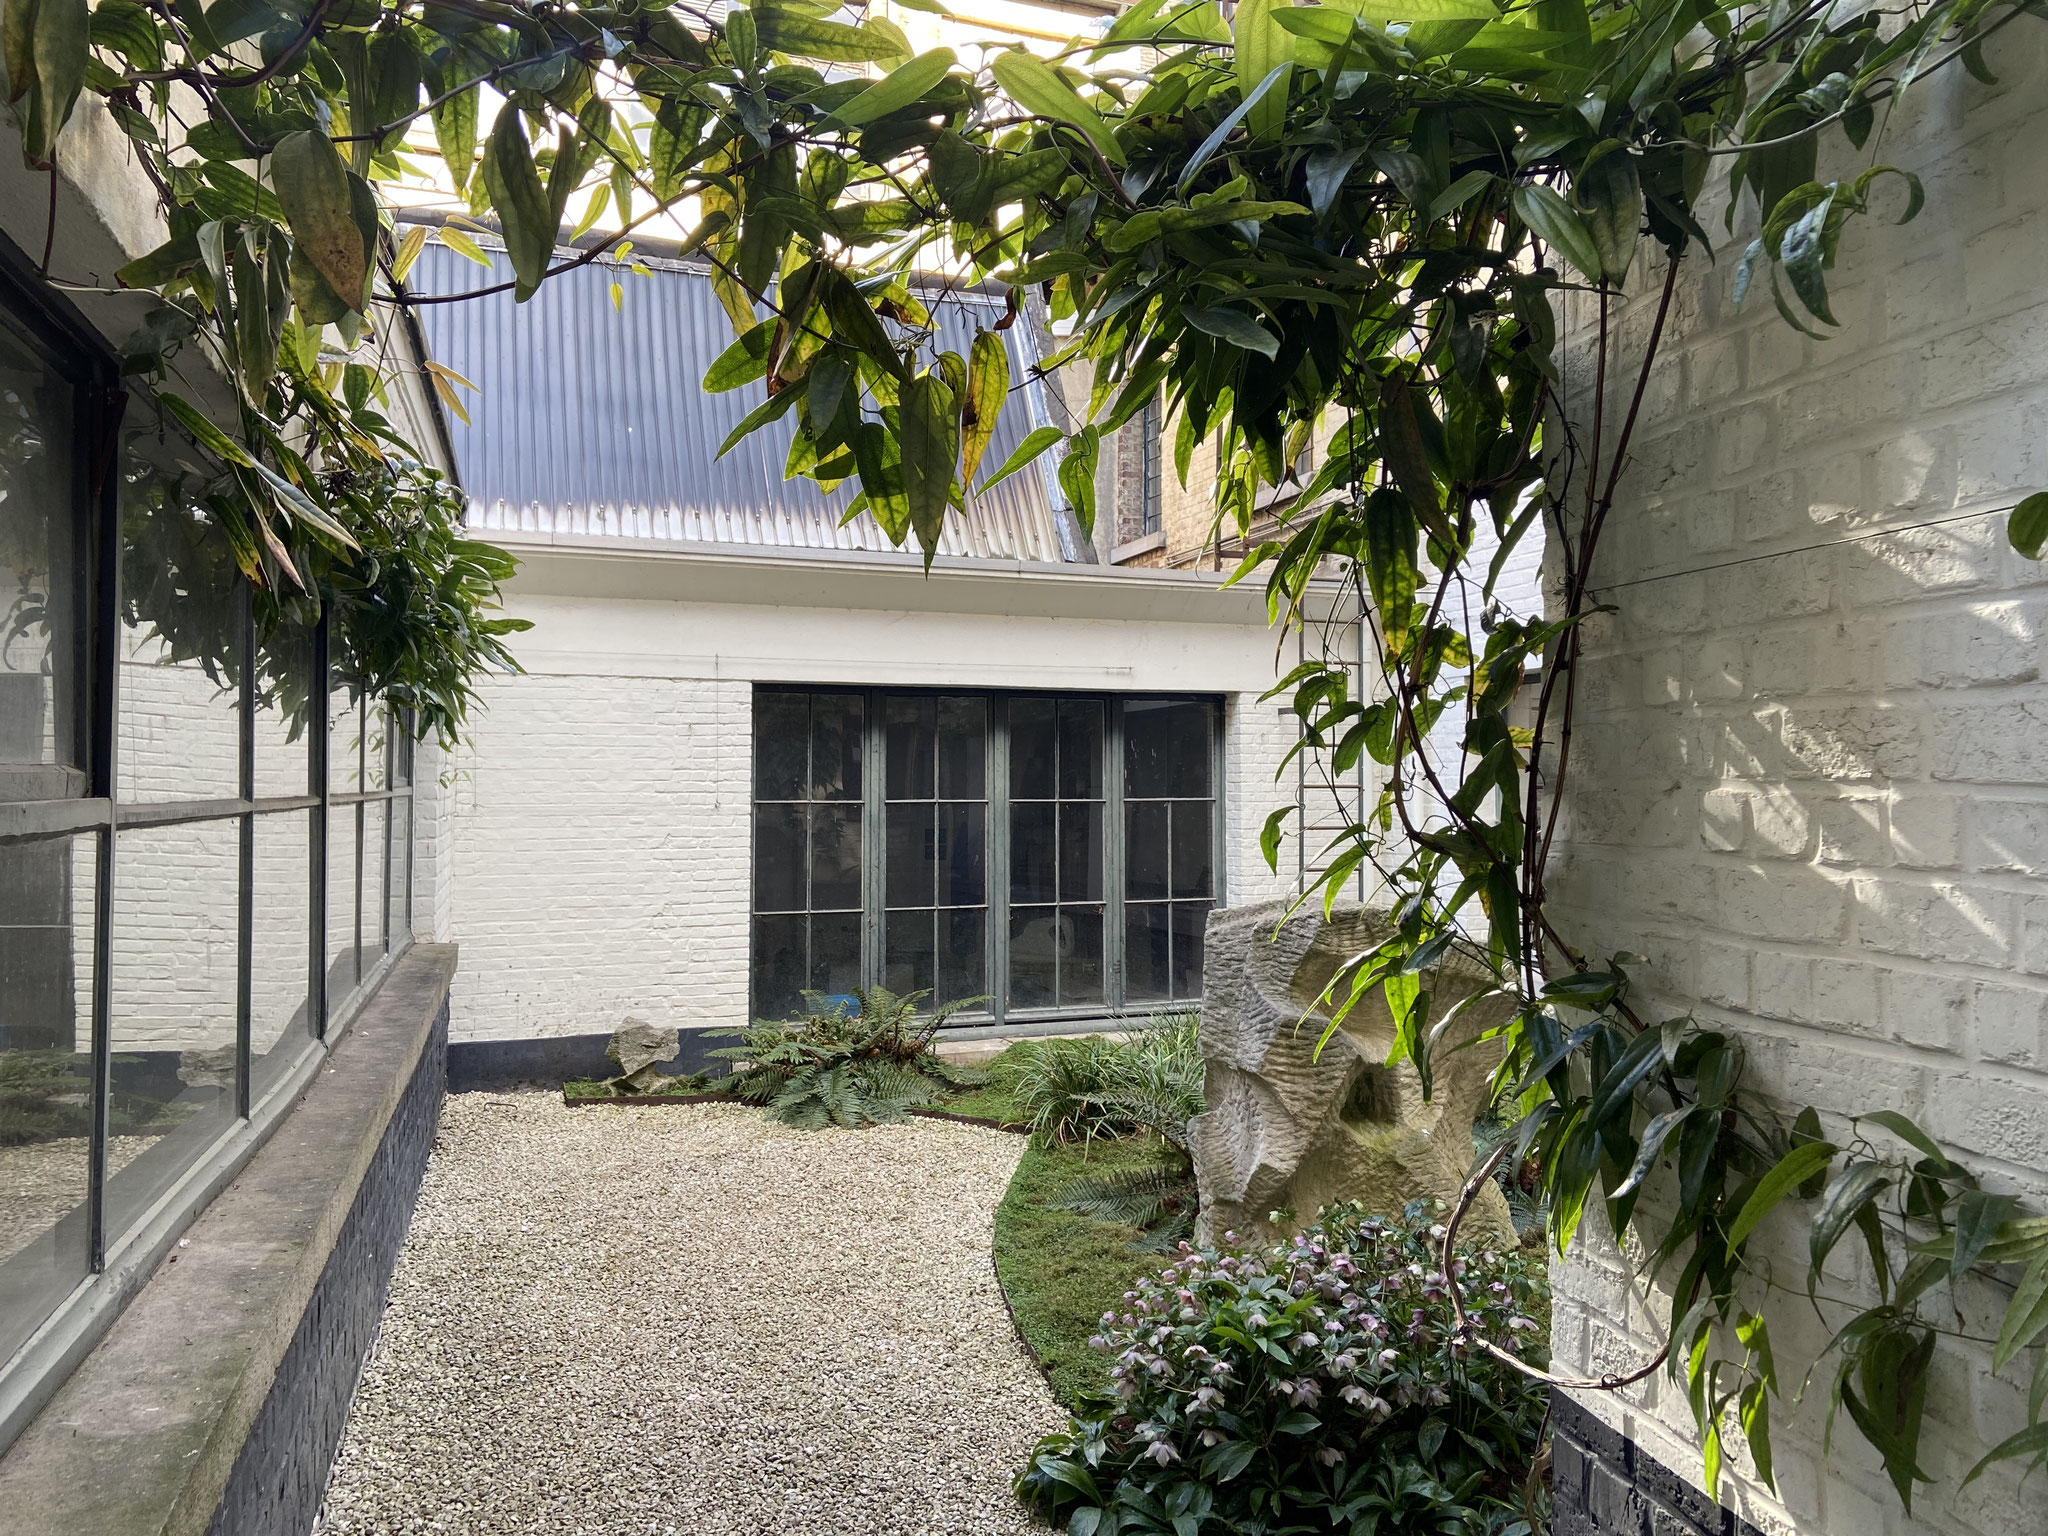 Cour de 60m2 - Style japonais - Année 6. Amenagement jardin Bruxelles